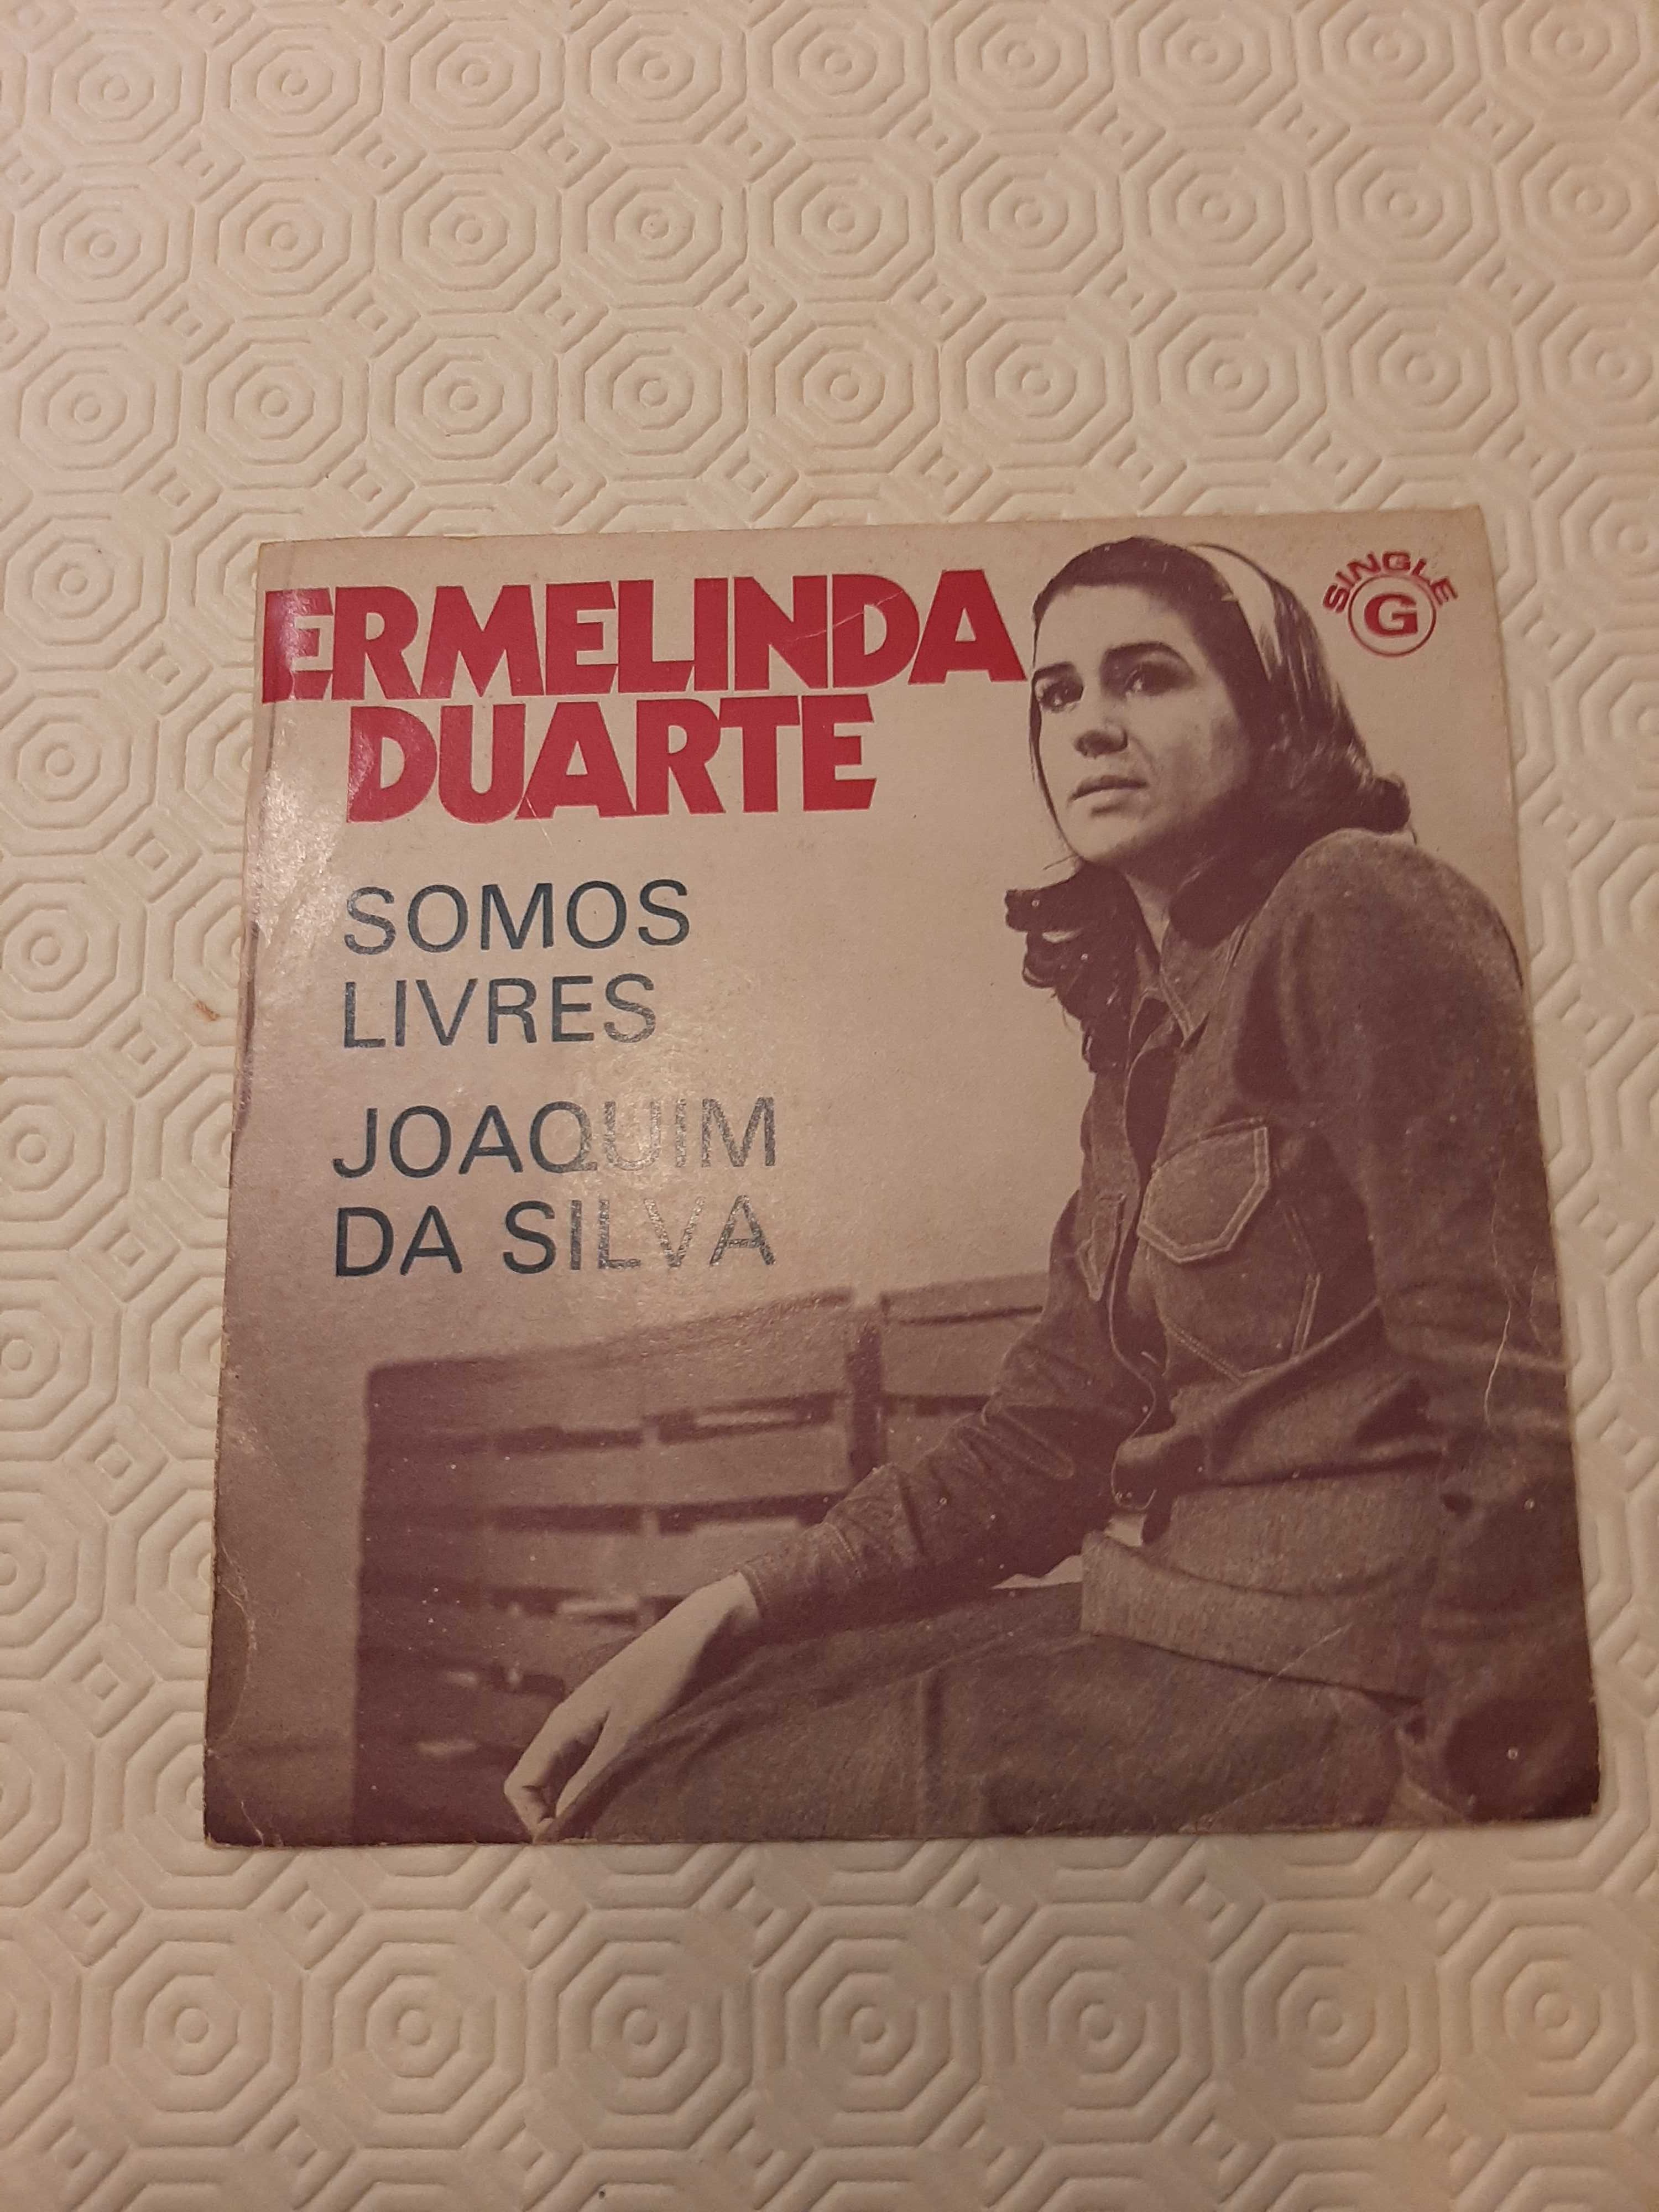 Vários singles de diversos artistas portugueses